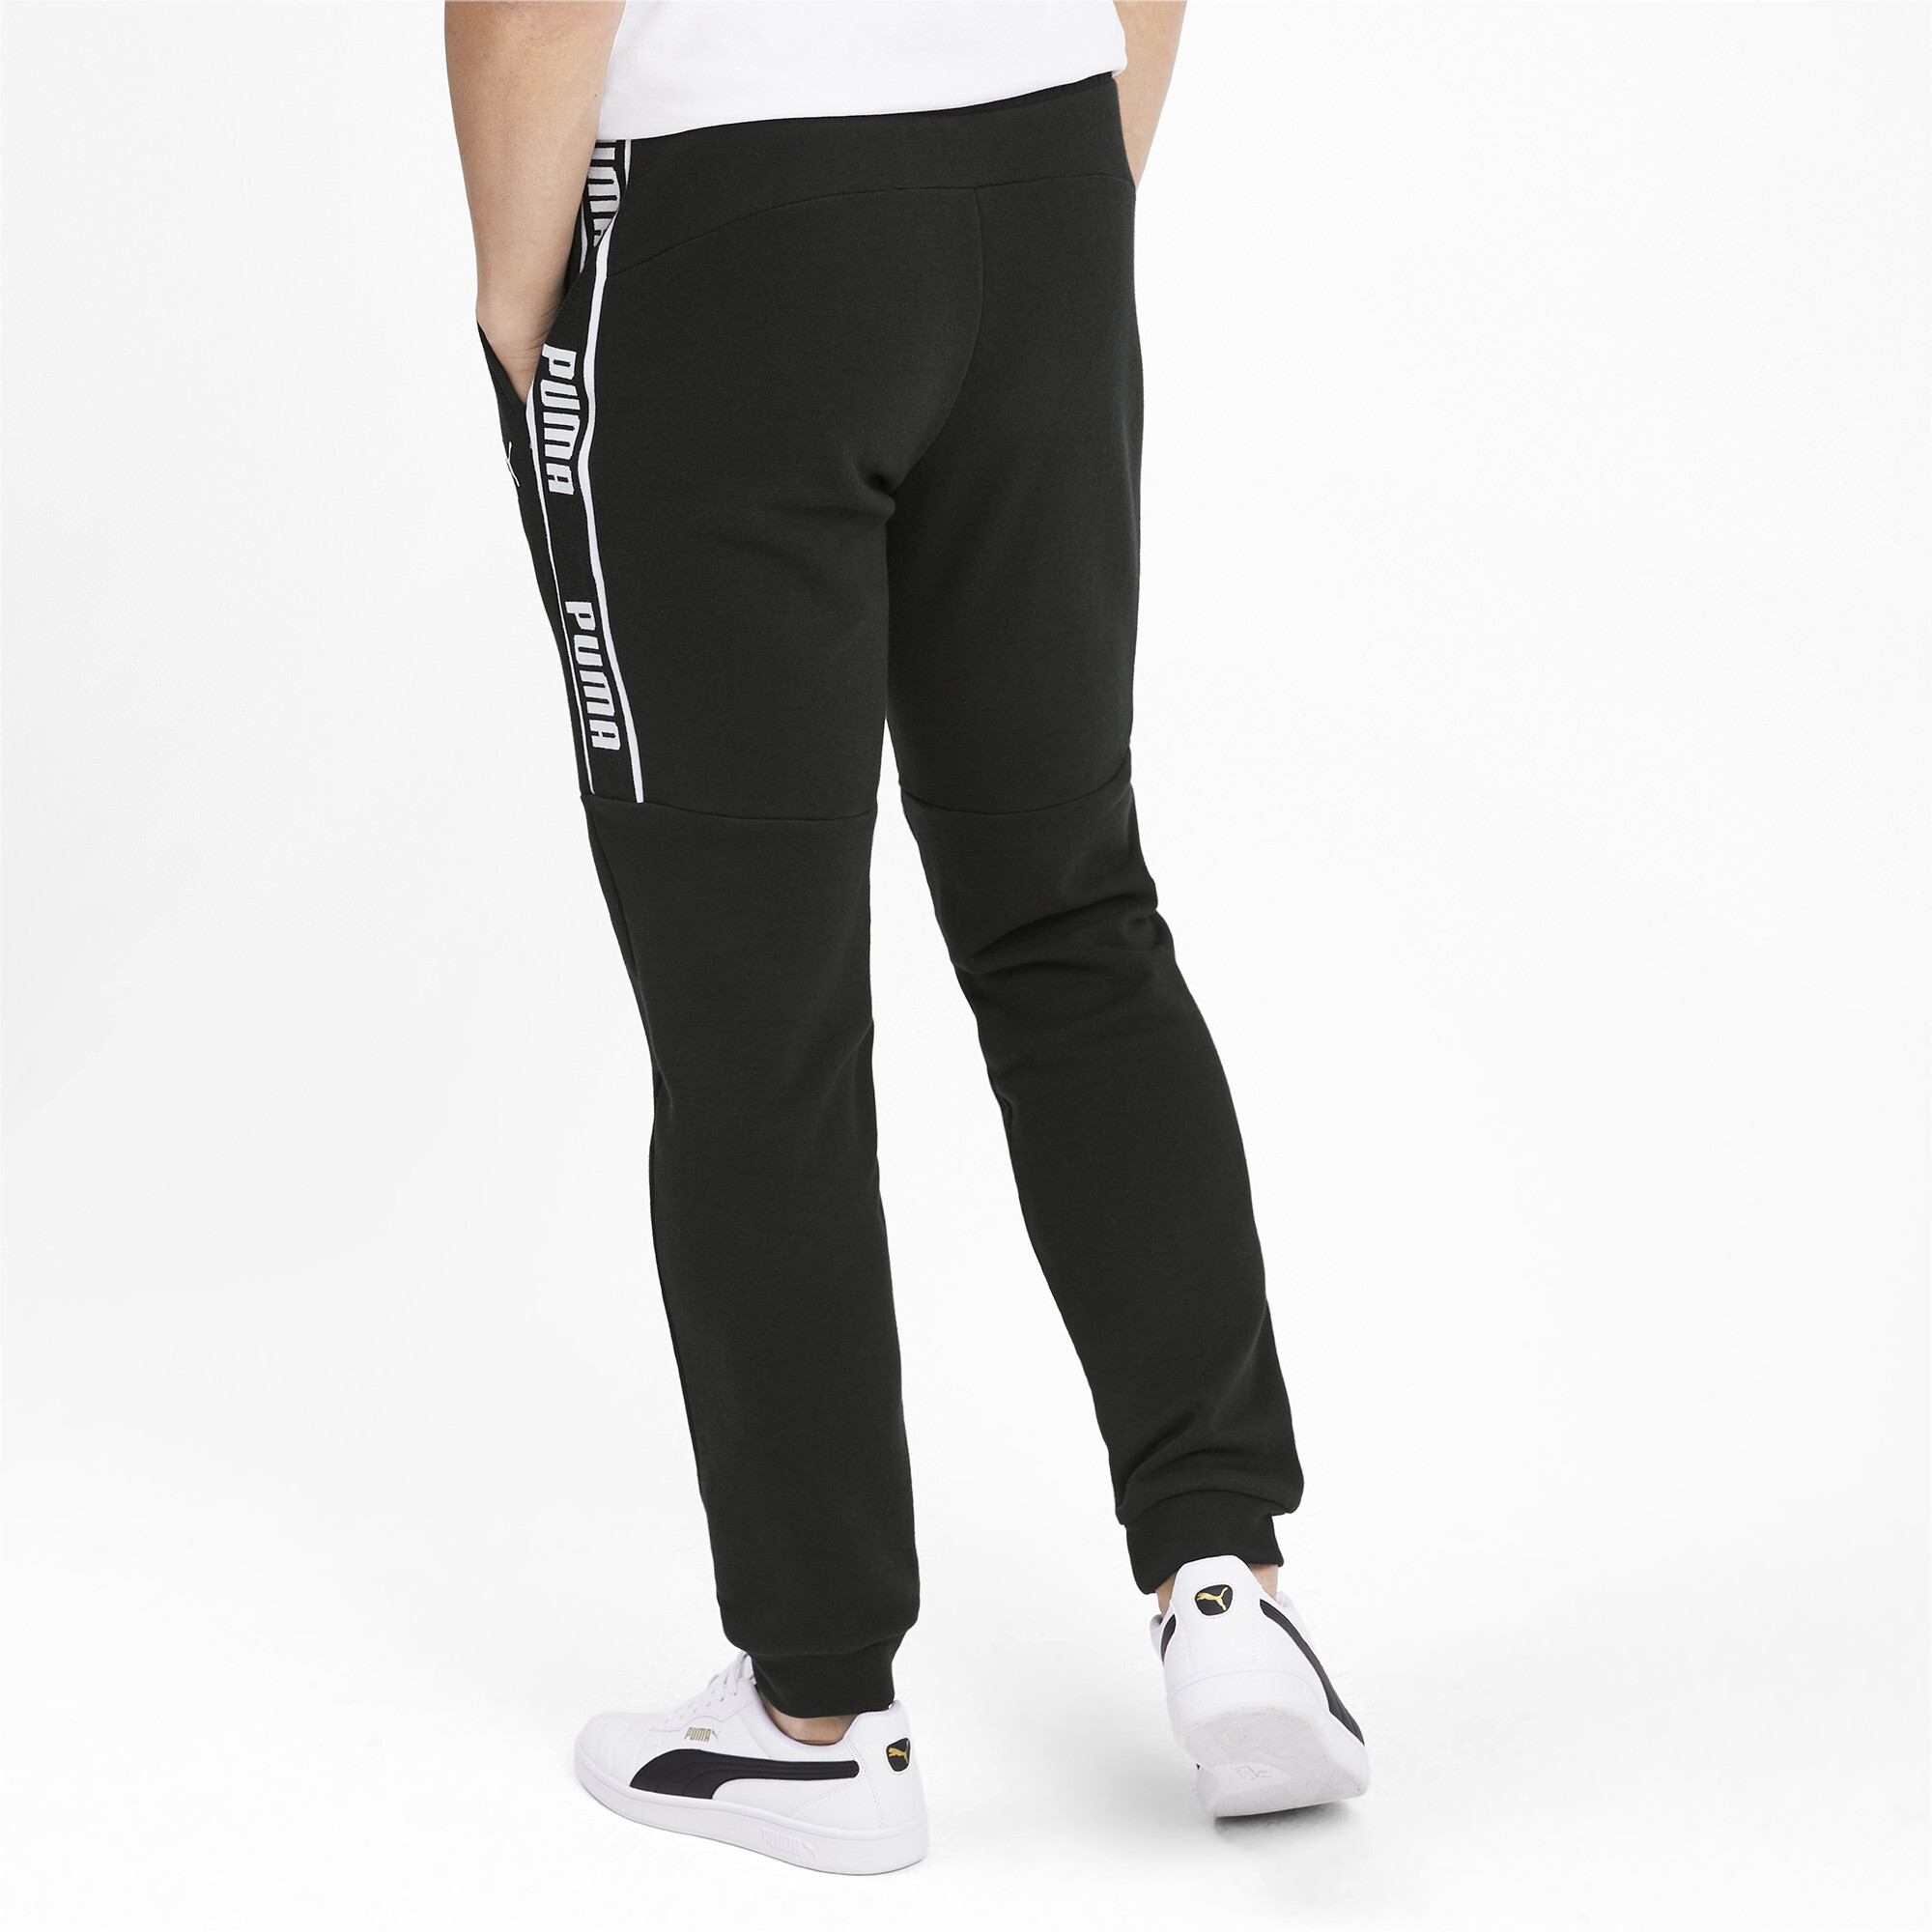 Men's Puma Amplified's Sweatpants, Black, Size M, Clothing